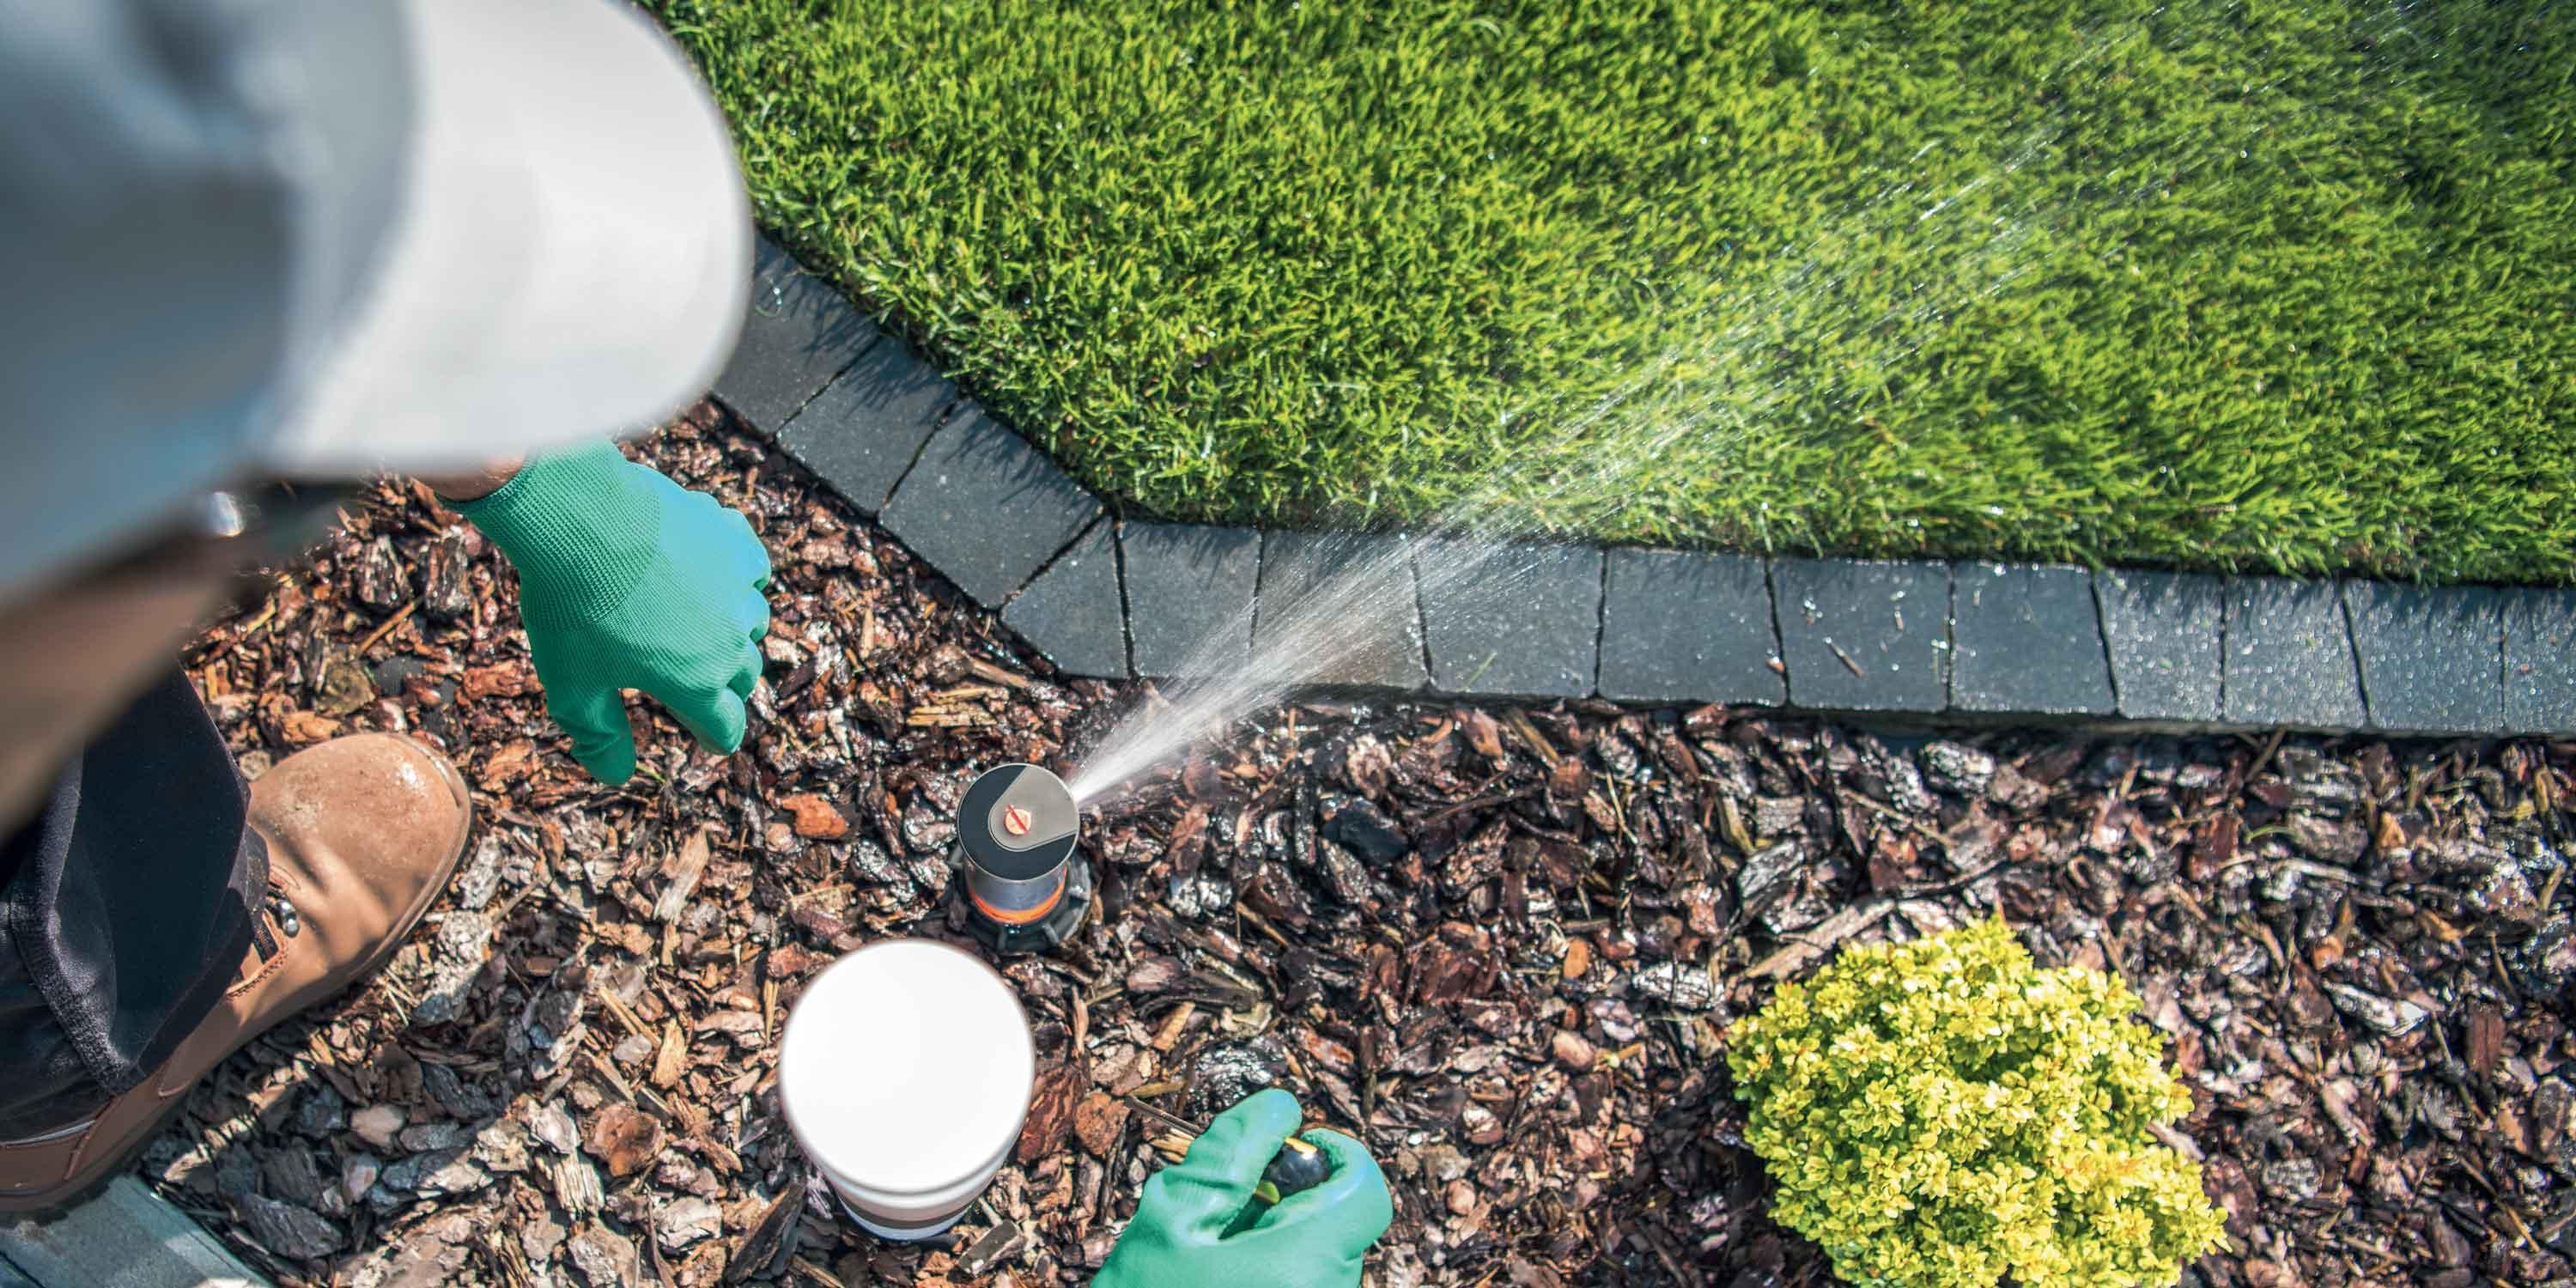 Irrigare il giardino senza sprecare l'acqua - Cose di Casa